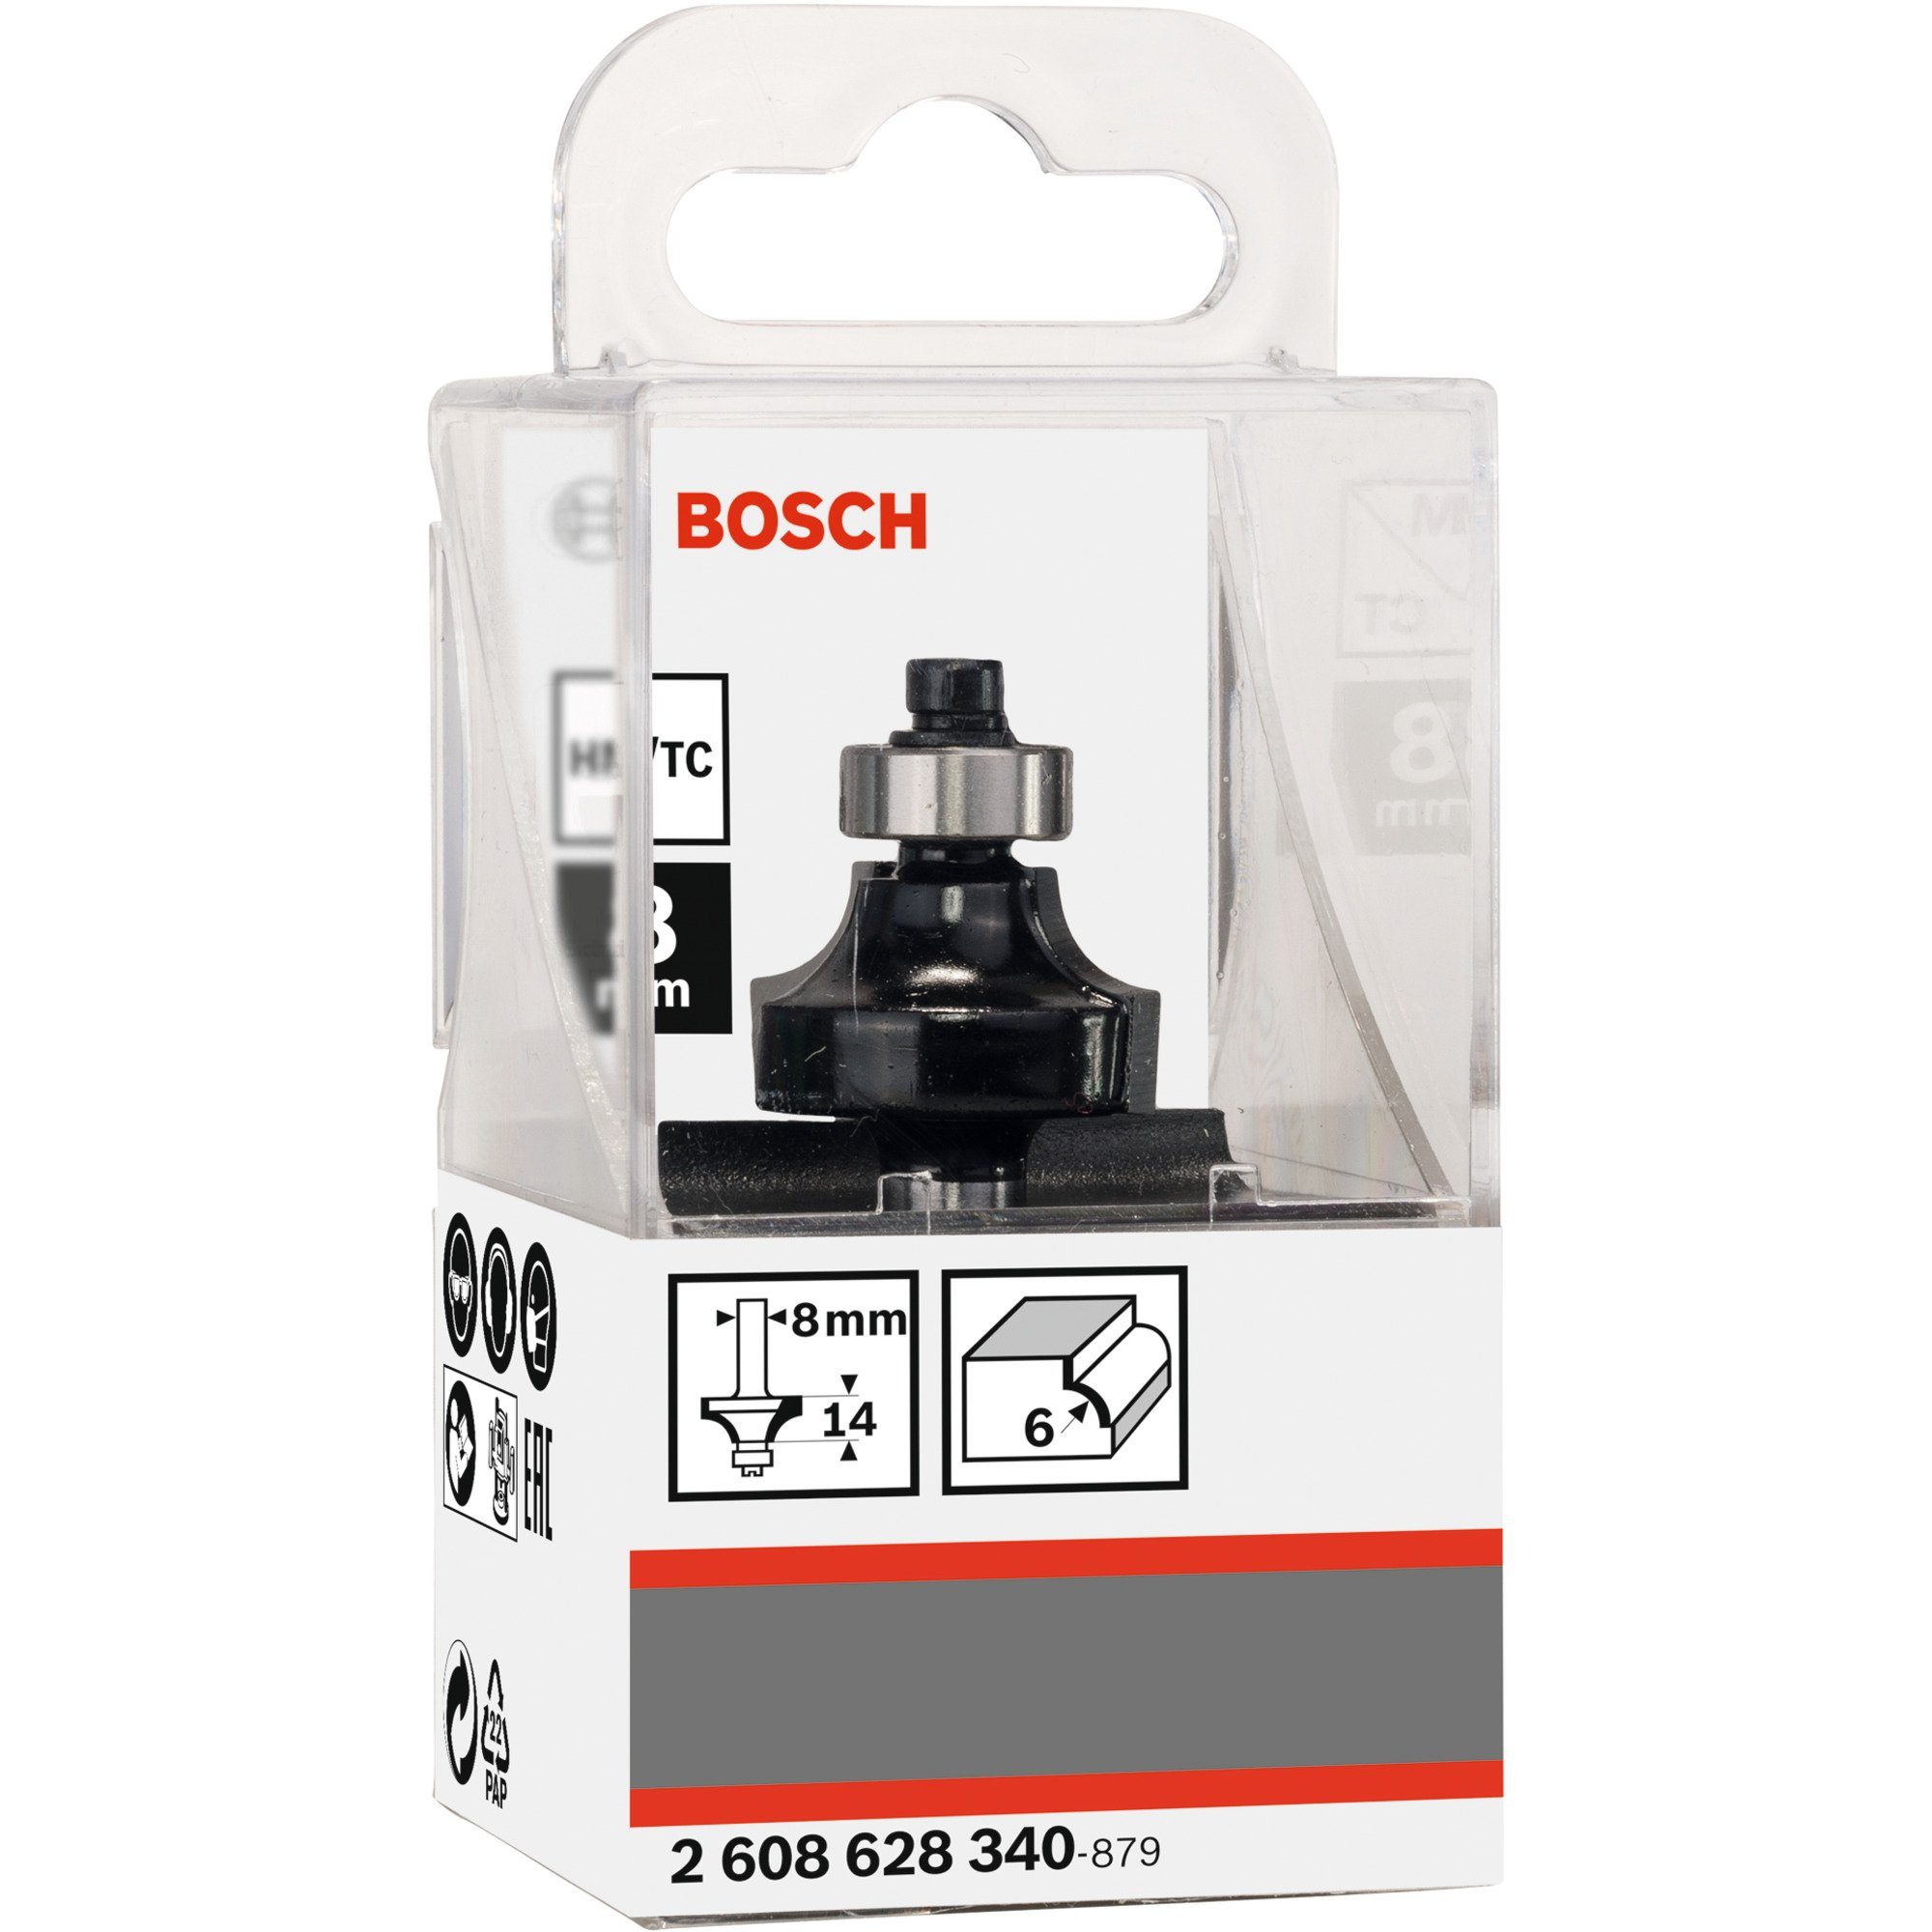 BOSCH Professional Standard Abrundfräser Wood Fräse Bosch for